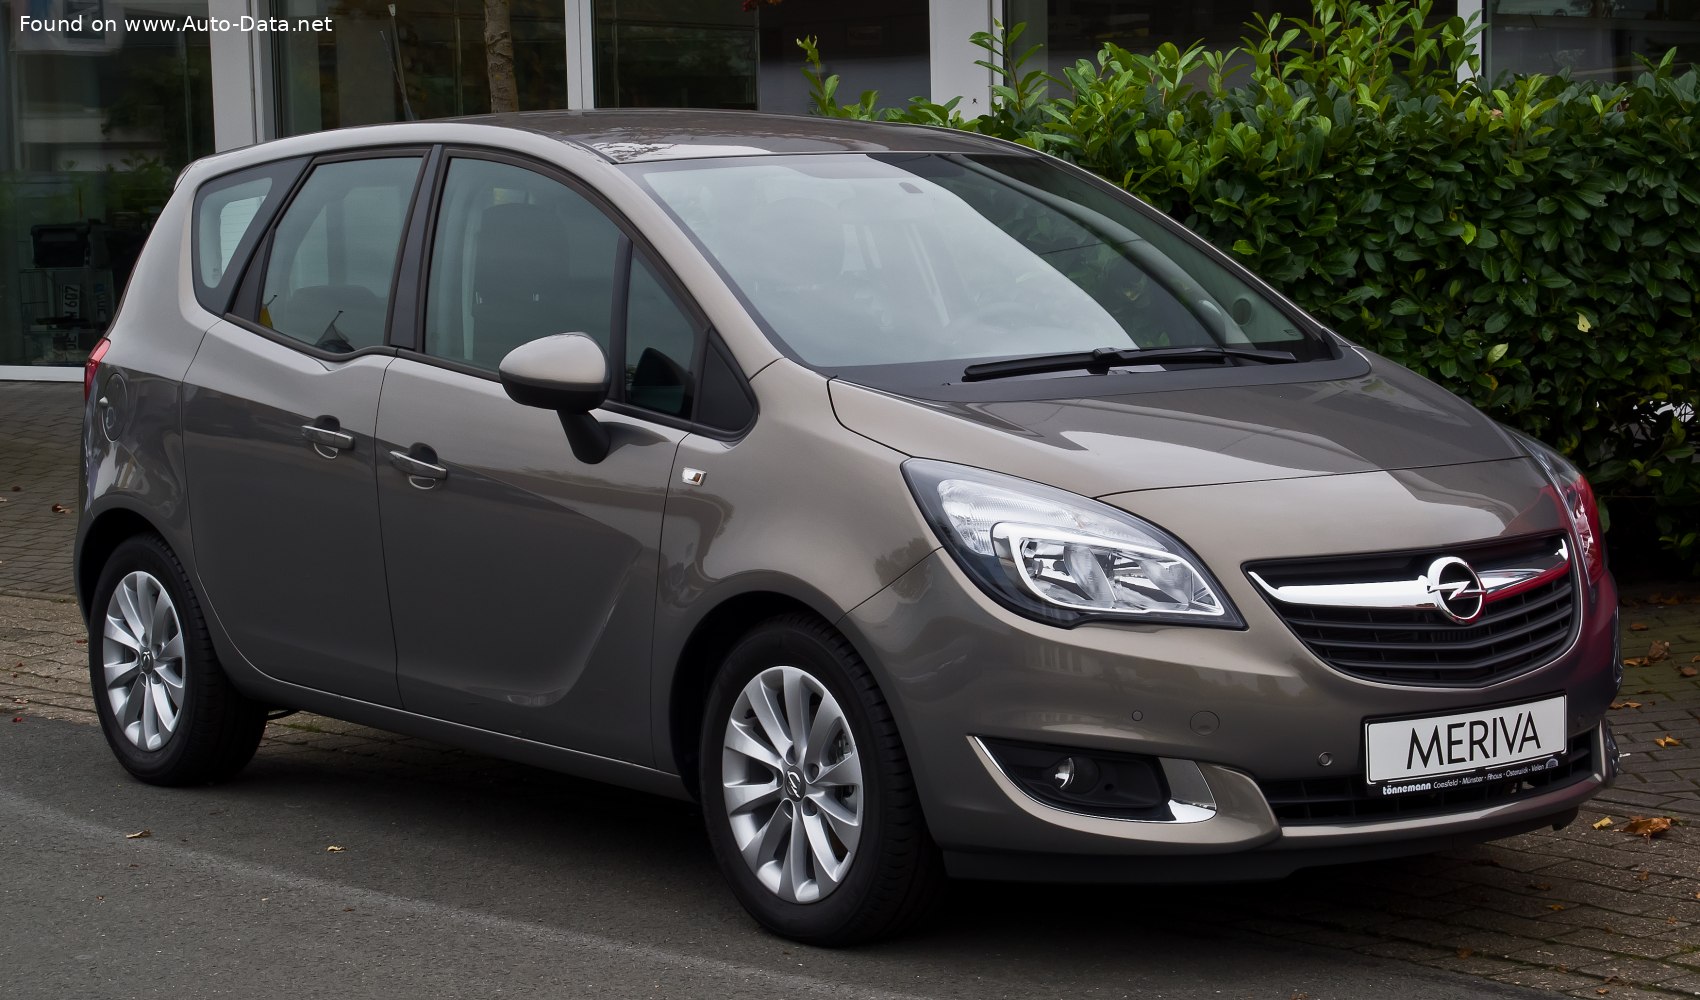 2014 Opel Meriva B (facelift 2014) 1.4 (100 Hp) Ecotec